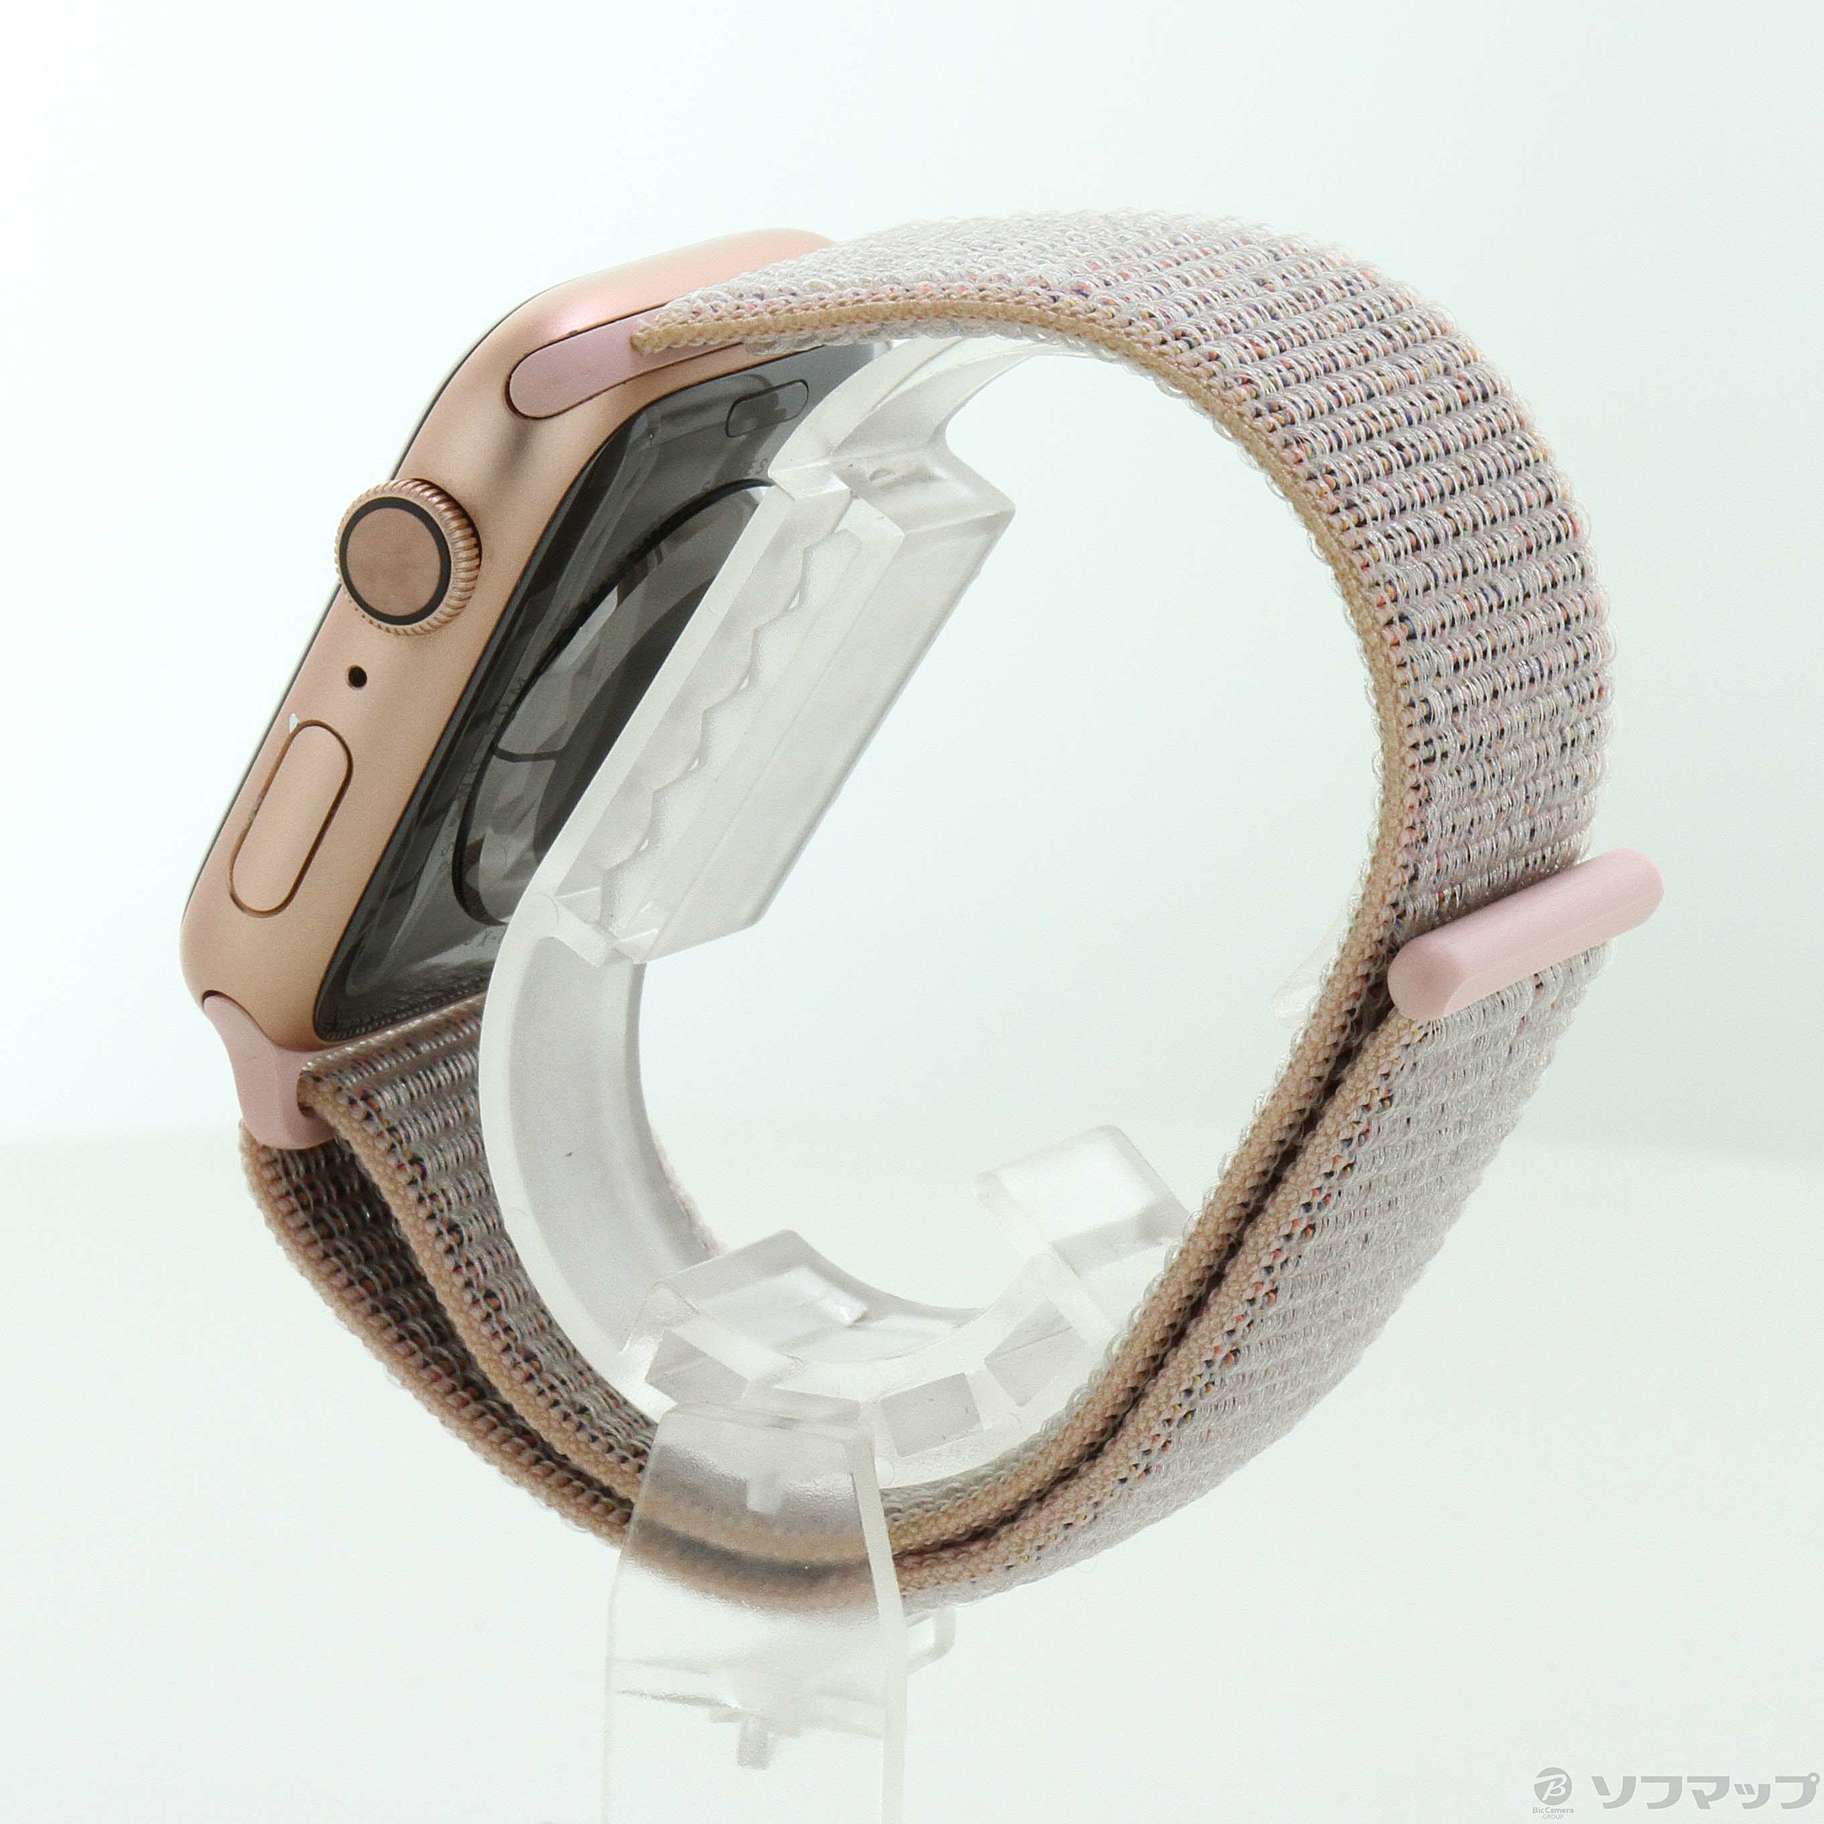 中古】Apple Watch Series 4 GPS 44mm ゴールドアルミニウムケース 